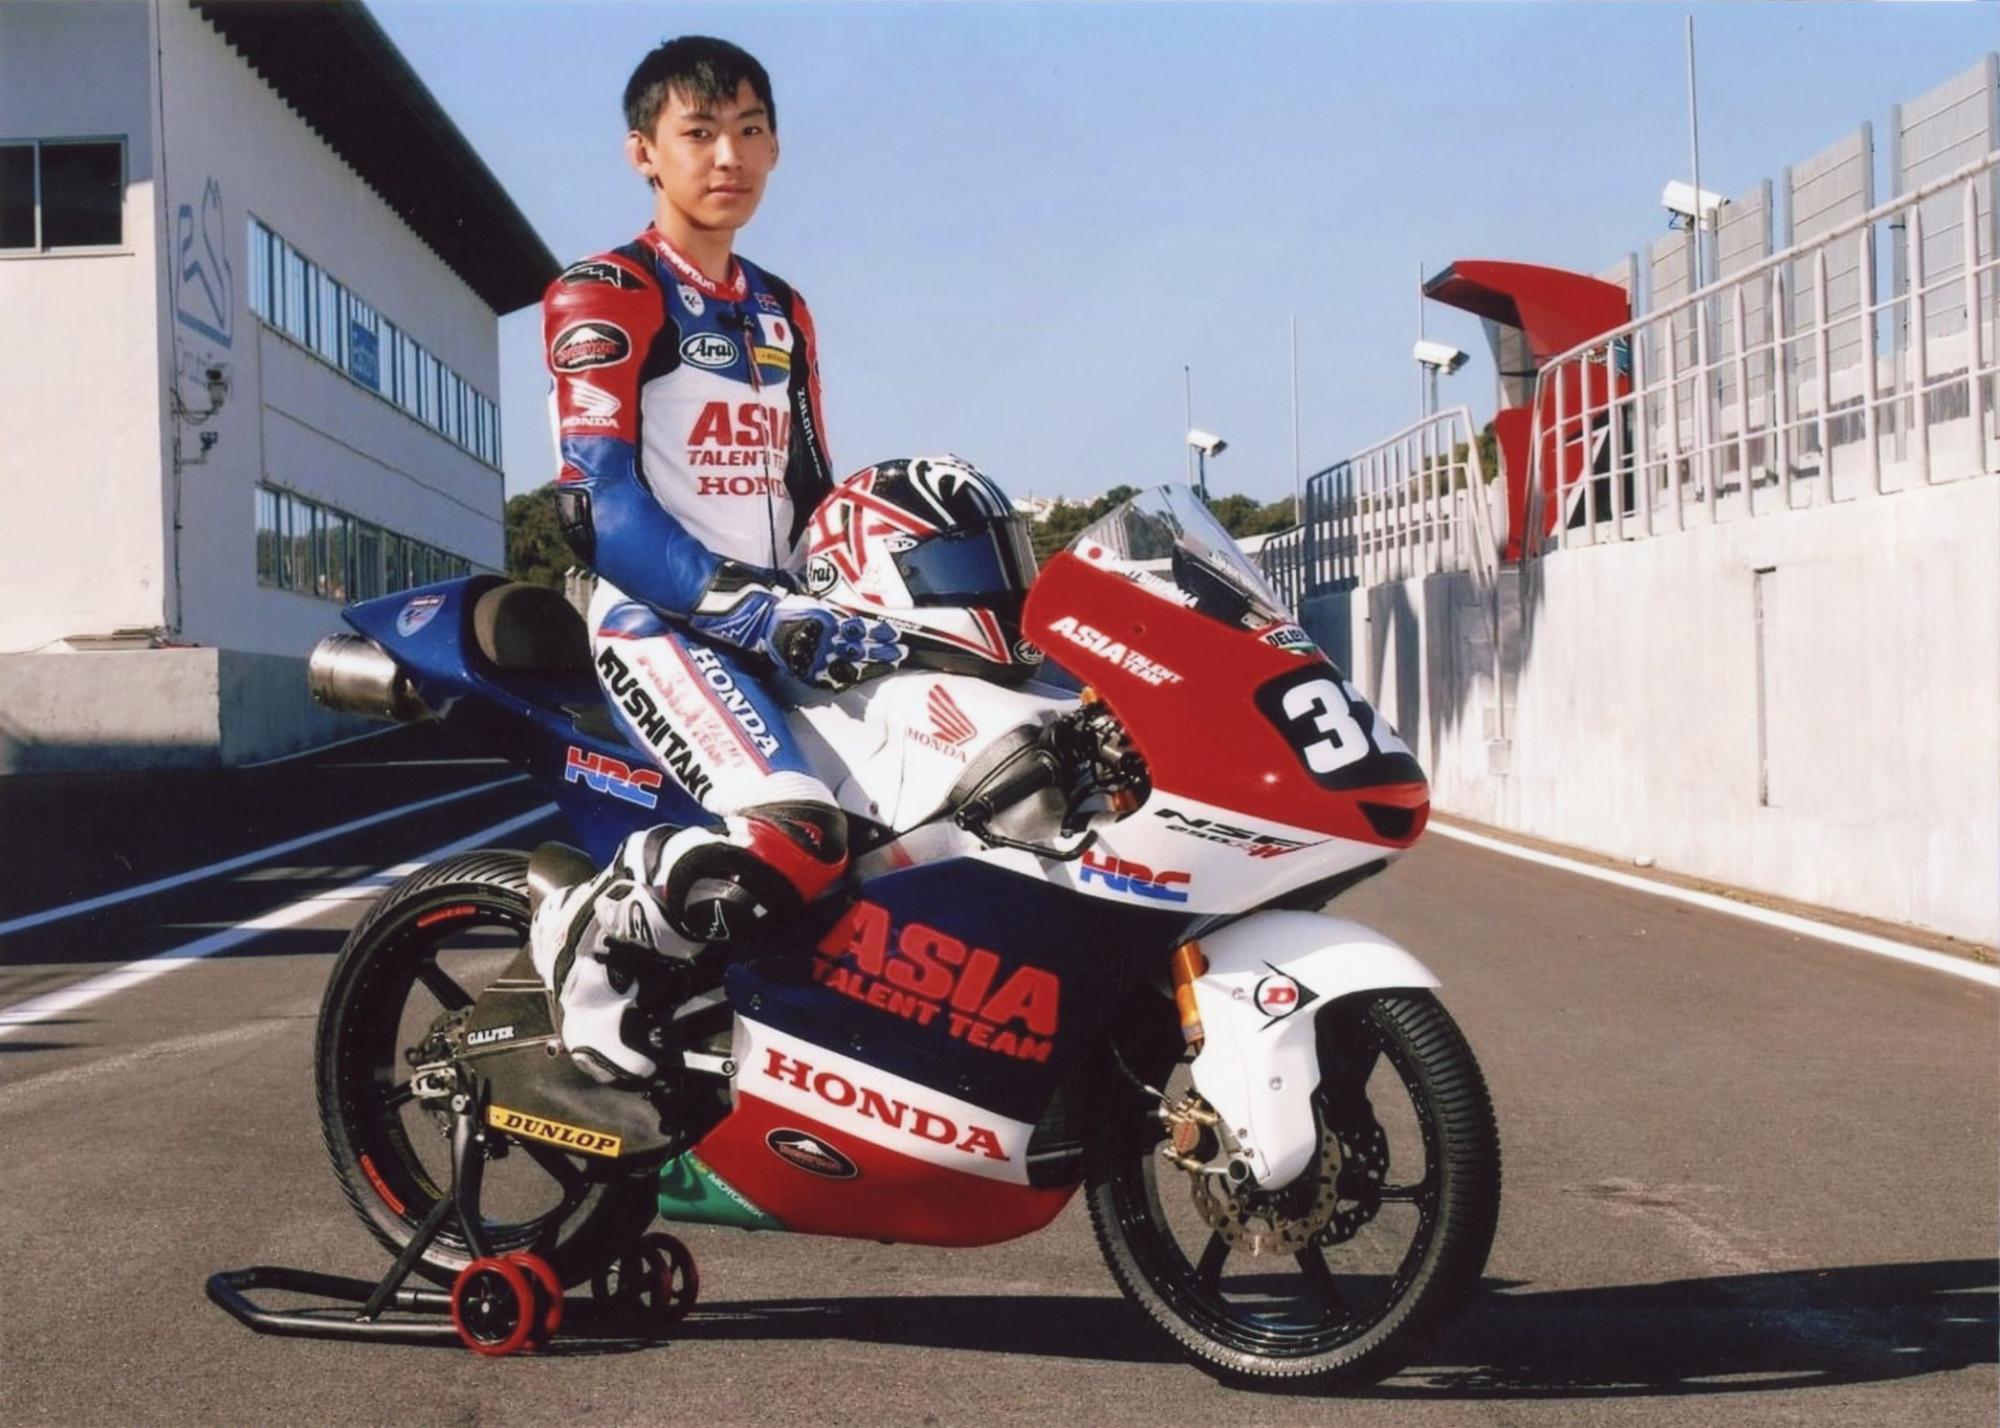 レーシングスーツを着てレース用のバイクにまたがる松山拓磨選手の写真